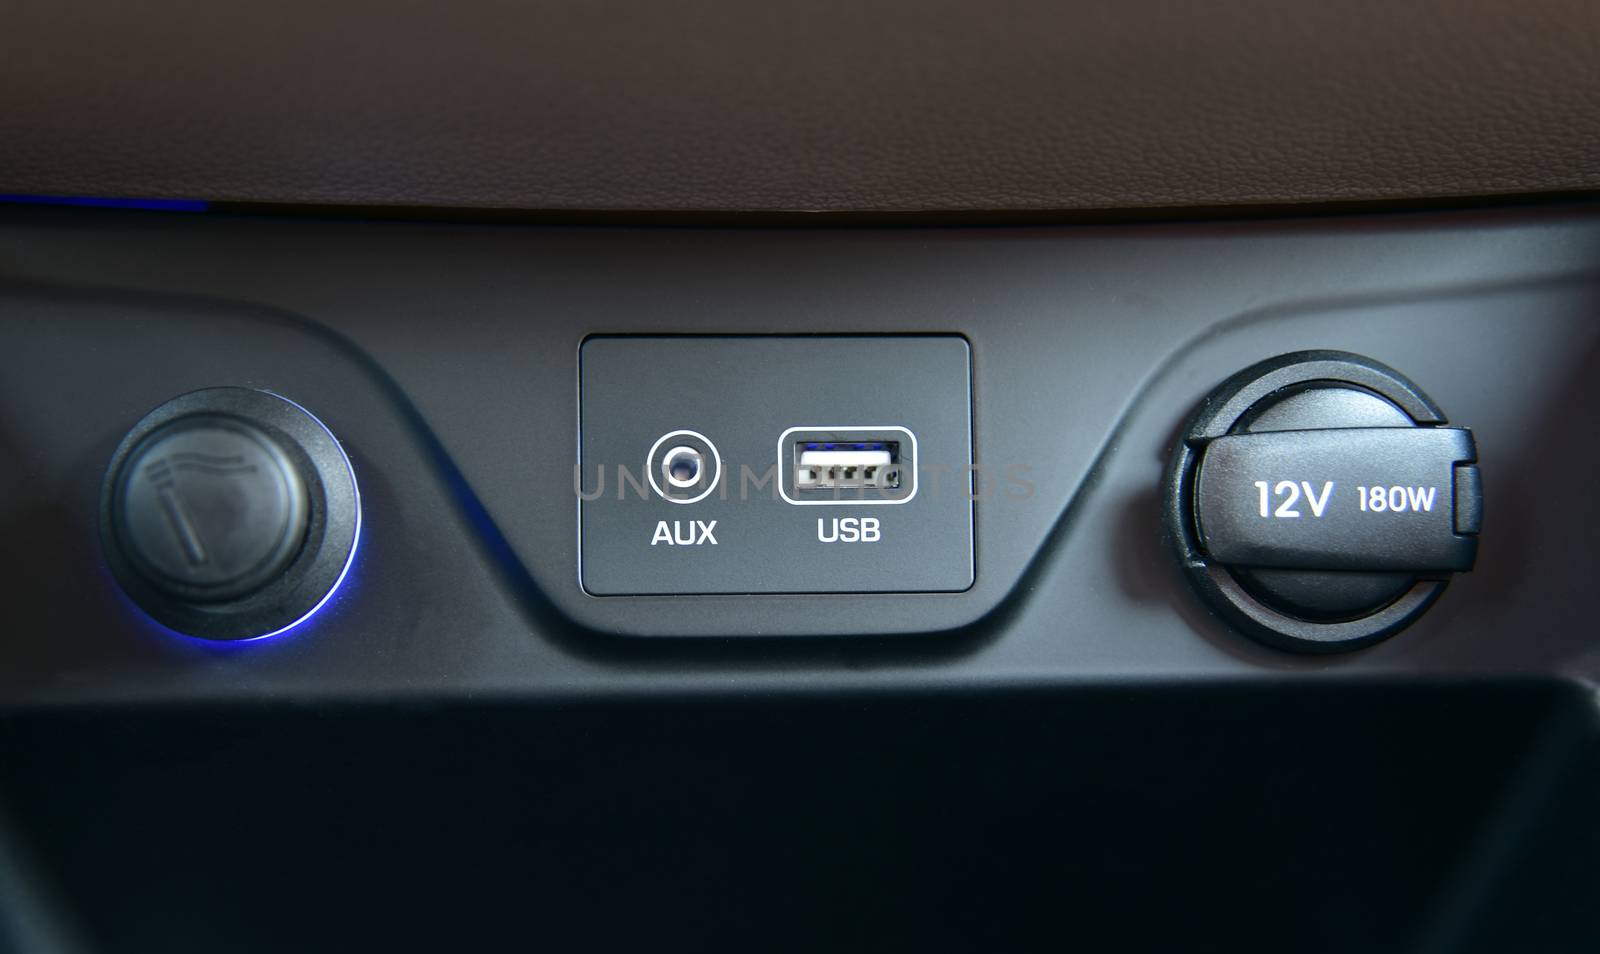 12V socket, USB port, AUX port on car dashboard and car cigarette lighter. Electric detail in car.